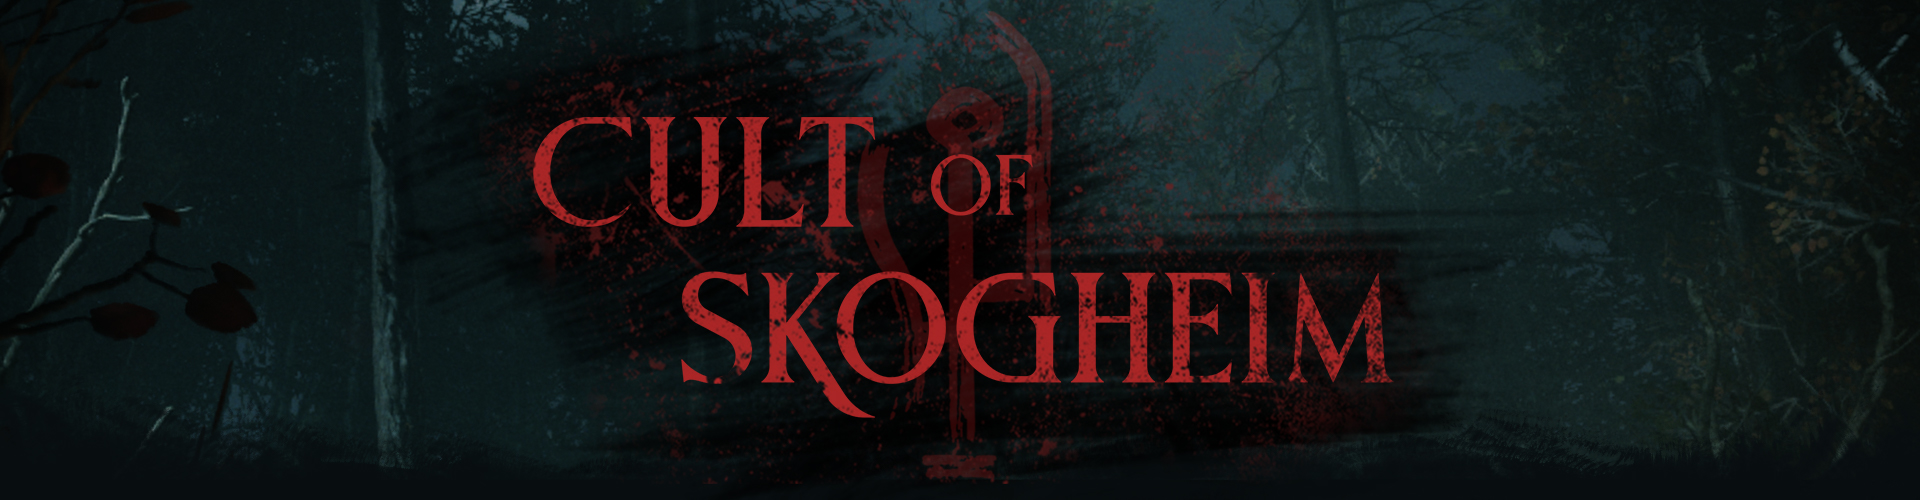 Cult of Skogheim